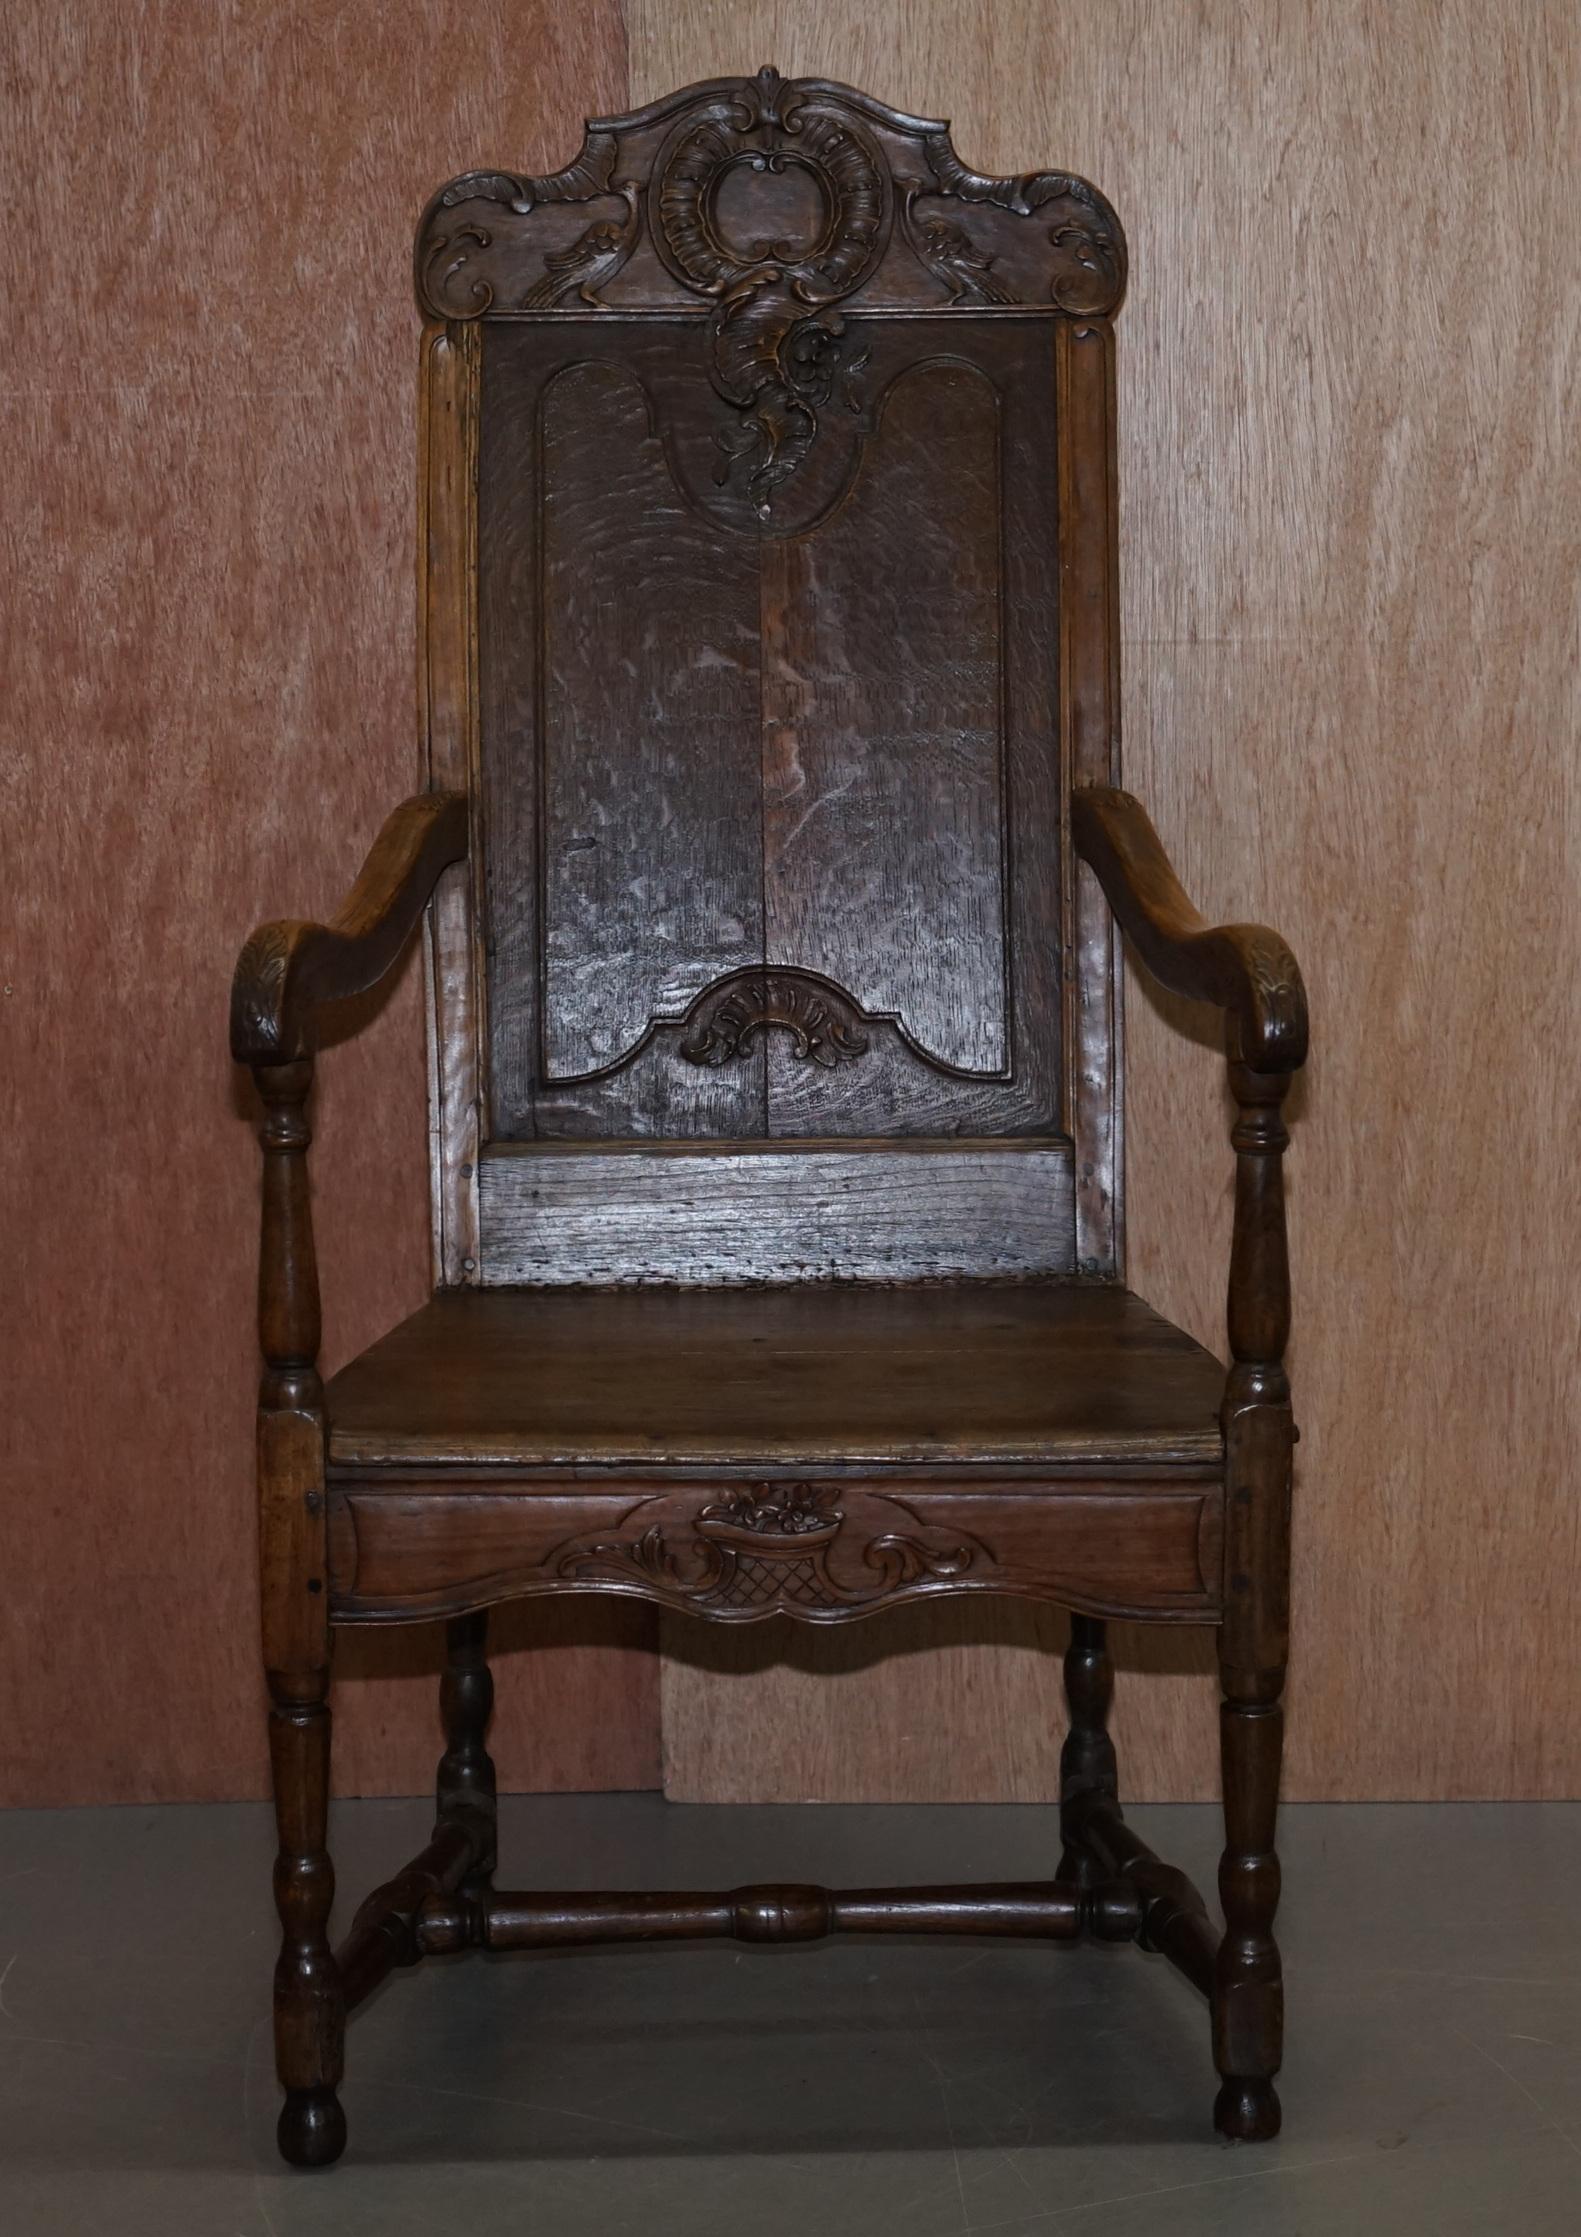 Nous sommes ravis d'offrir à la vente ce très rare fauteuil Wainscot en chêne sculpté à la main par Herve Liege Belgique vers 1760

Une pièce originale très bien faite, la chaise est connue comme une chaise Herve Liege, elles sont rarement, voire